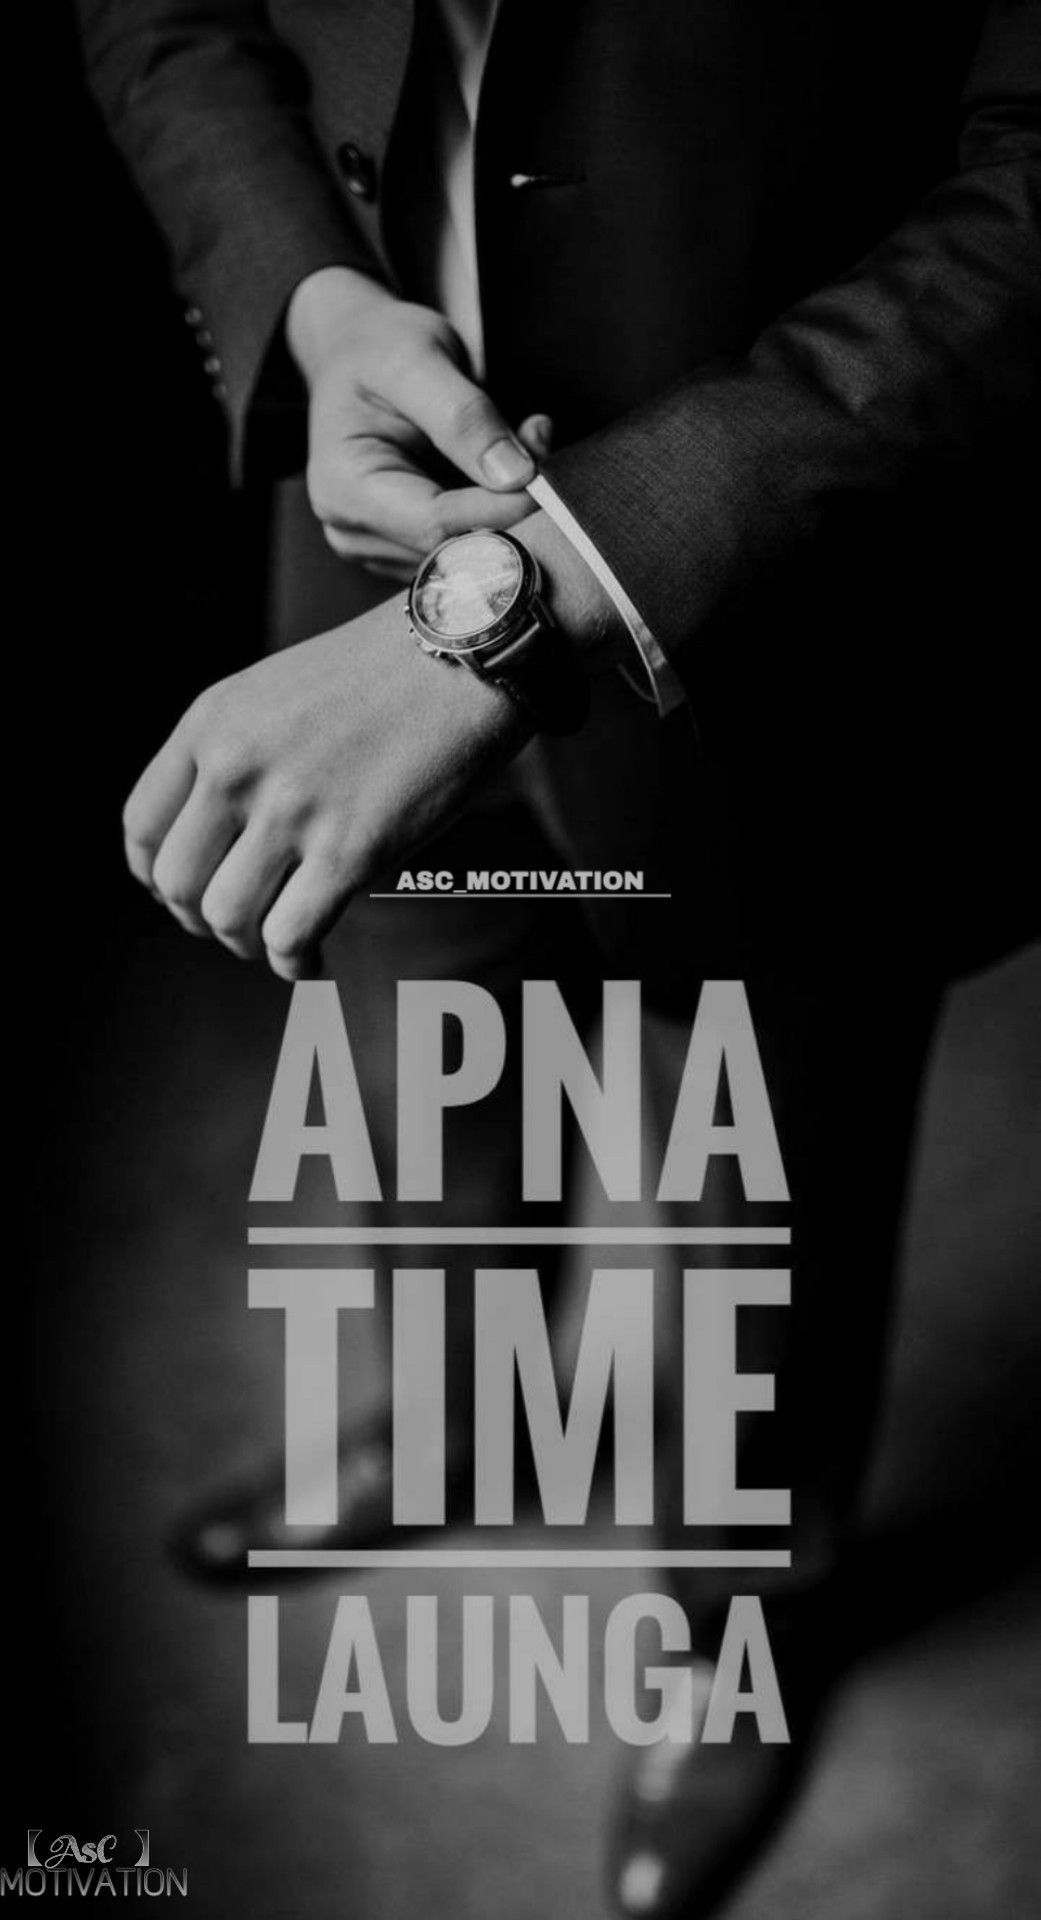 Apna Time Ayega.. Apna Time Launga. #ASC_MOTIVATION